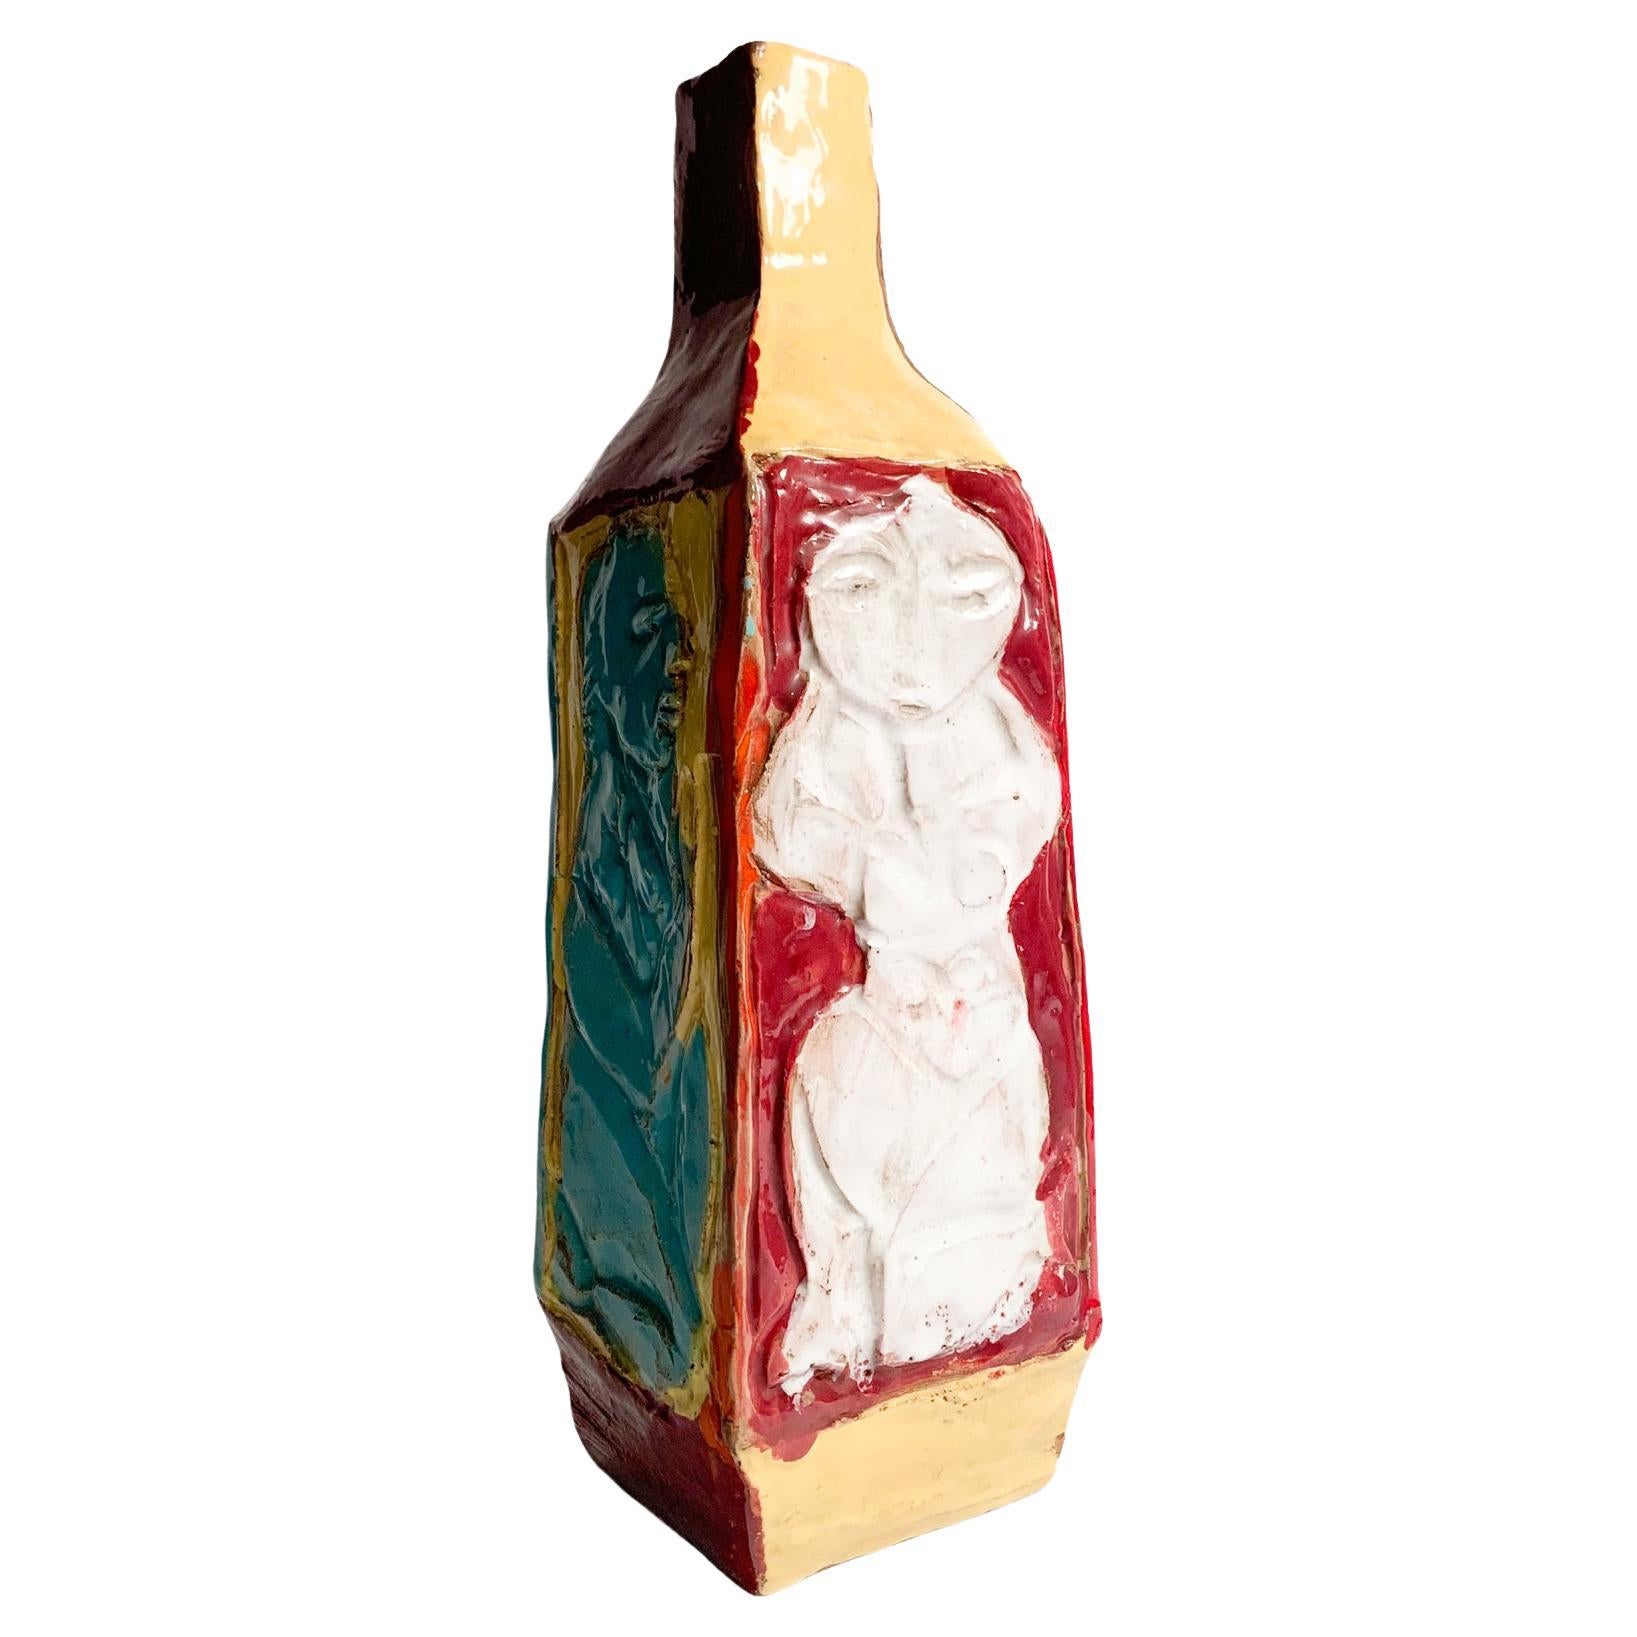 Mehrfarbige Keramikvase mit geometrischer Form, in Relief, deren Herstellung der Cantagalli-Manufaktur in den 1950er Jahren zugeschrieben wird

Ø 13 cm h 31 cm

Manifattura Cantagalli ist ein historisches italienisches Unternehmen, das auf die